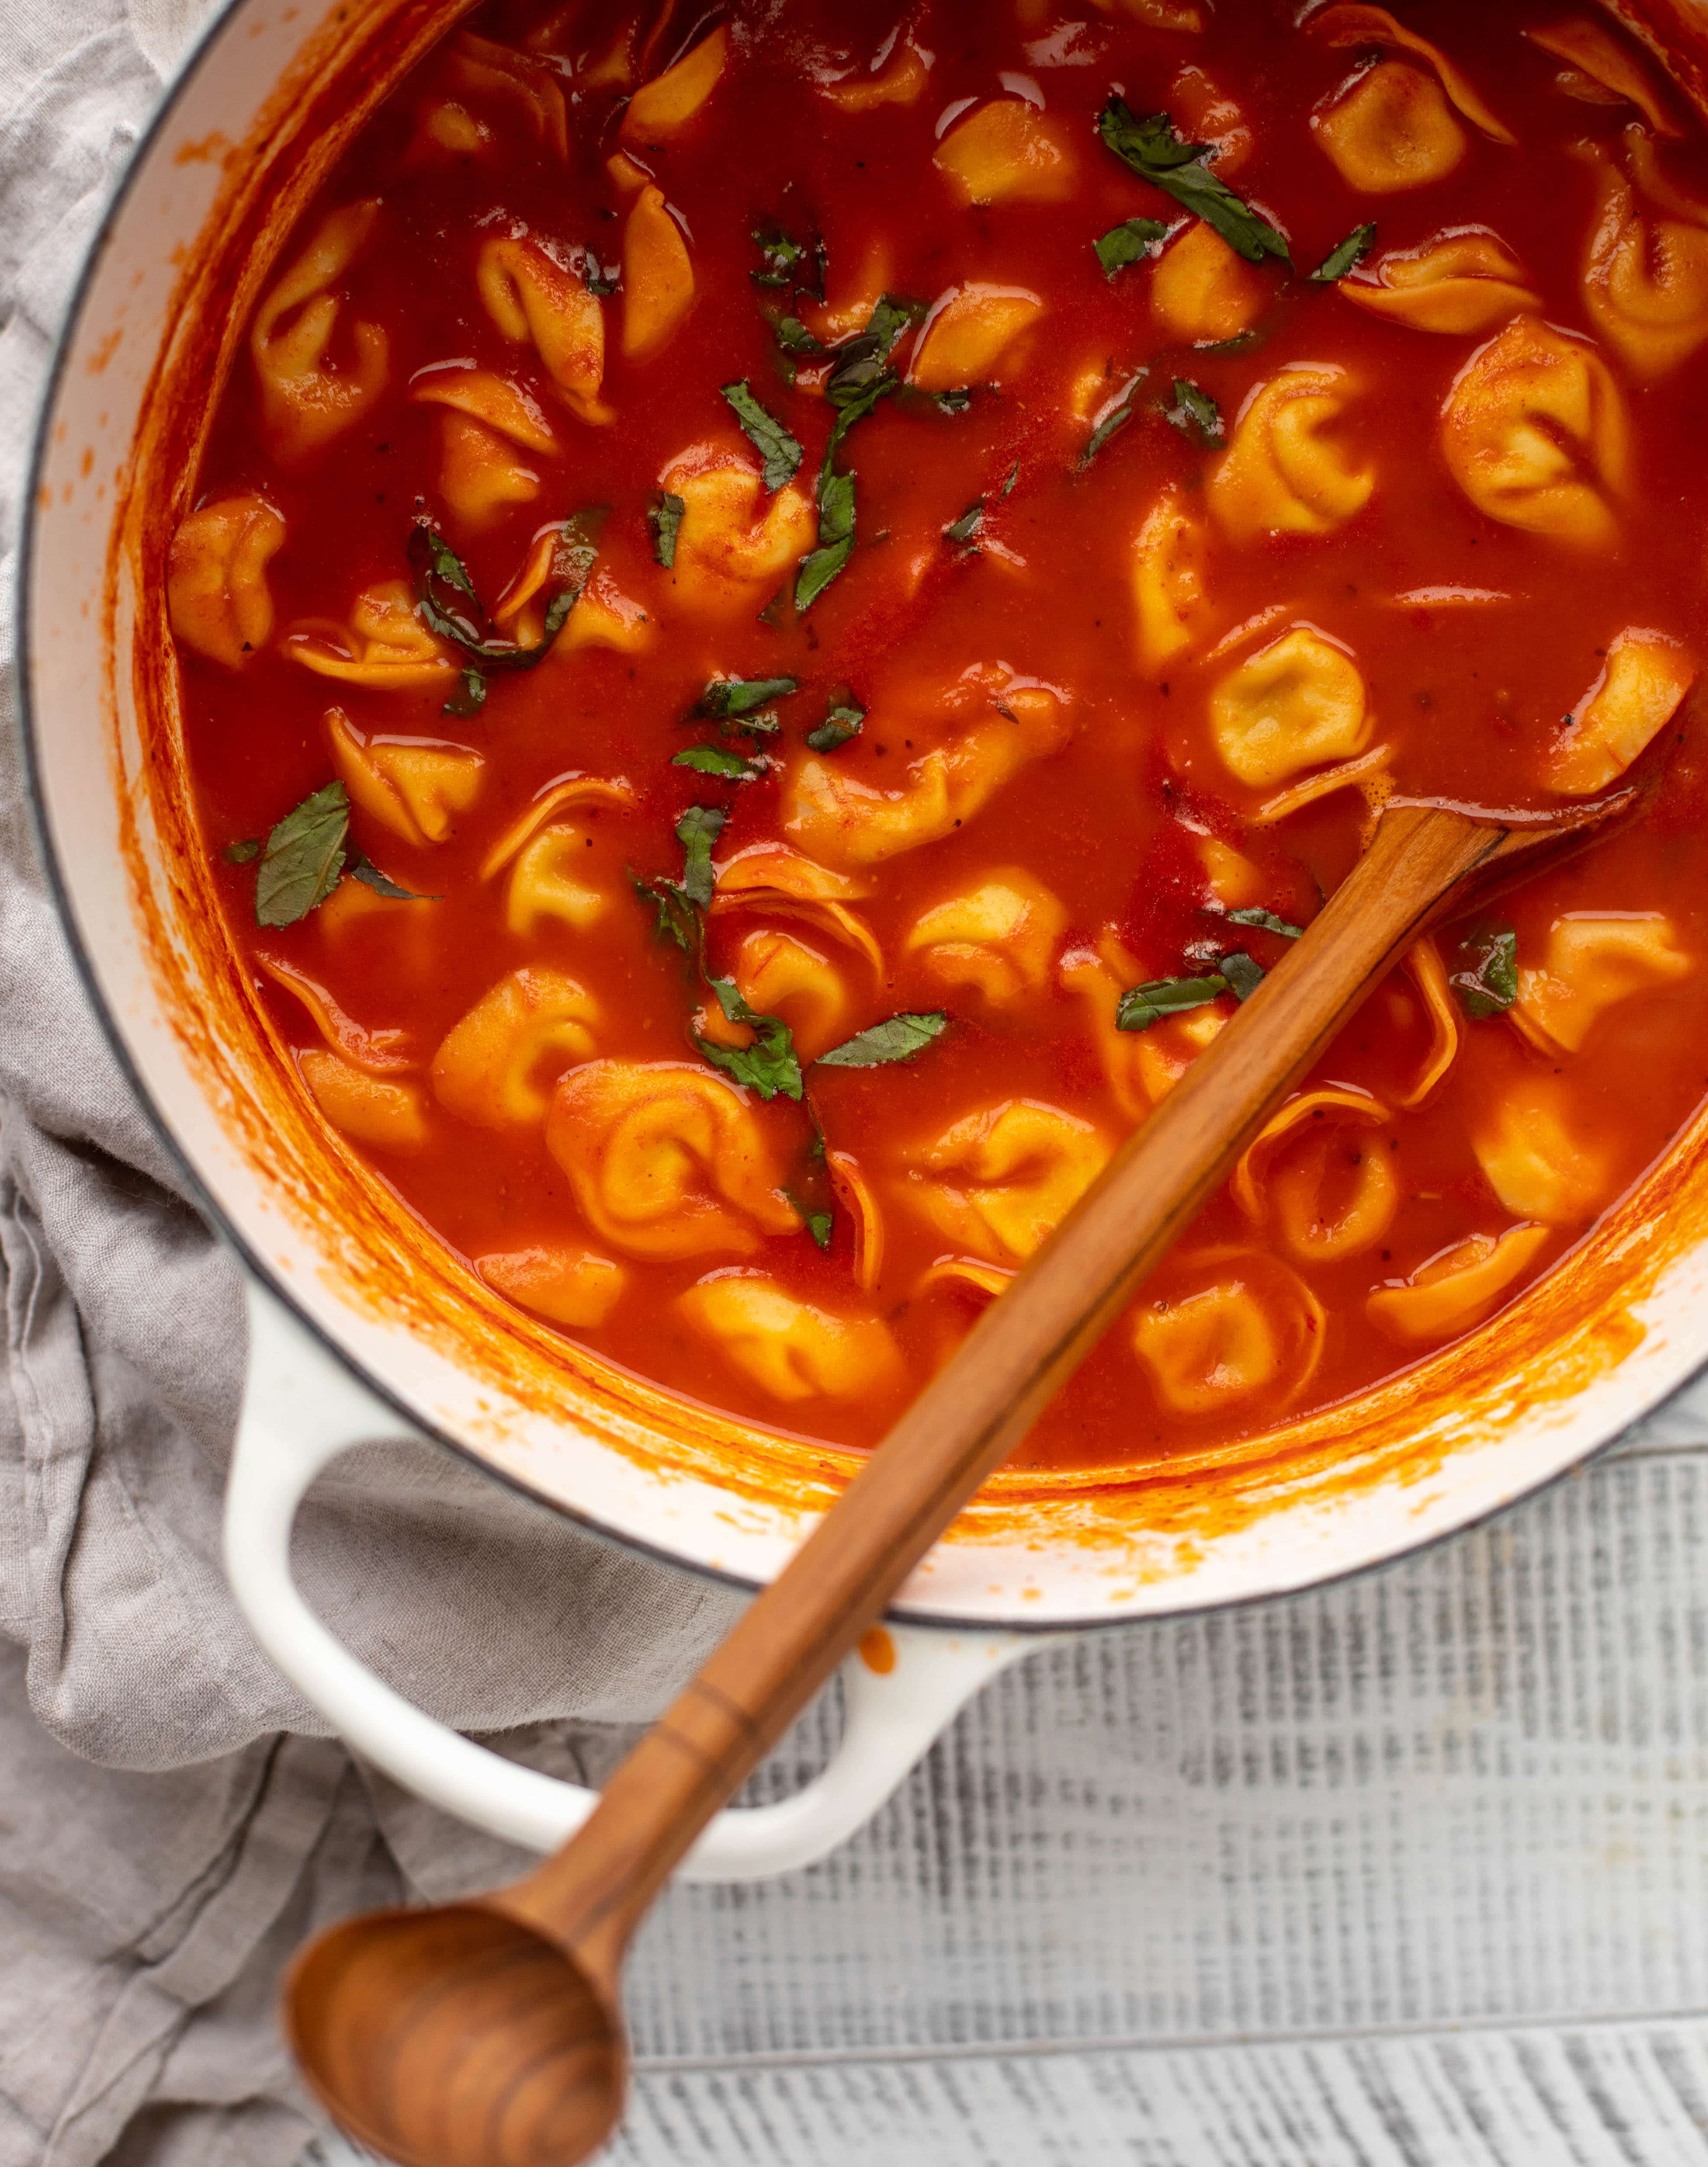 ¡Esta sopa de tortellini de tomate al curry tiene mucho sabor!  Sirva con tortellini con queso y tostadas de ajo con mantequilla marrón para la comida perfecta entre semana.